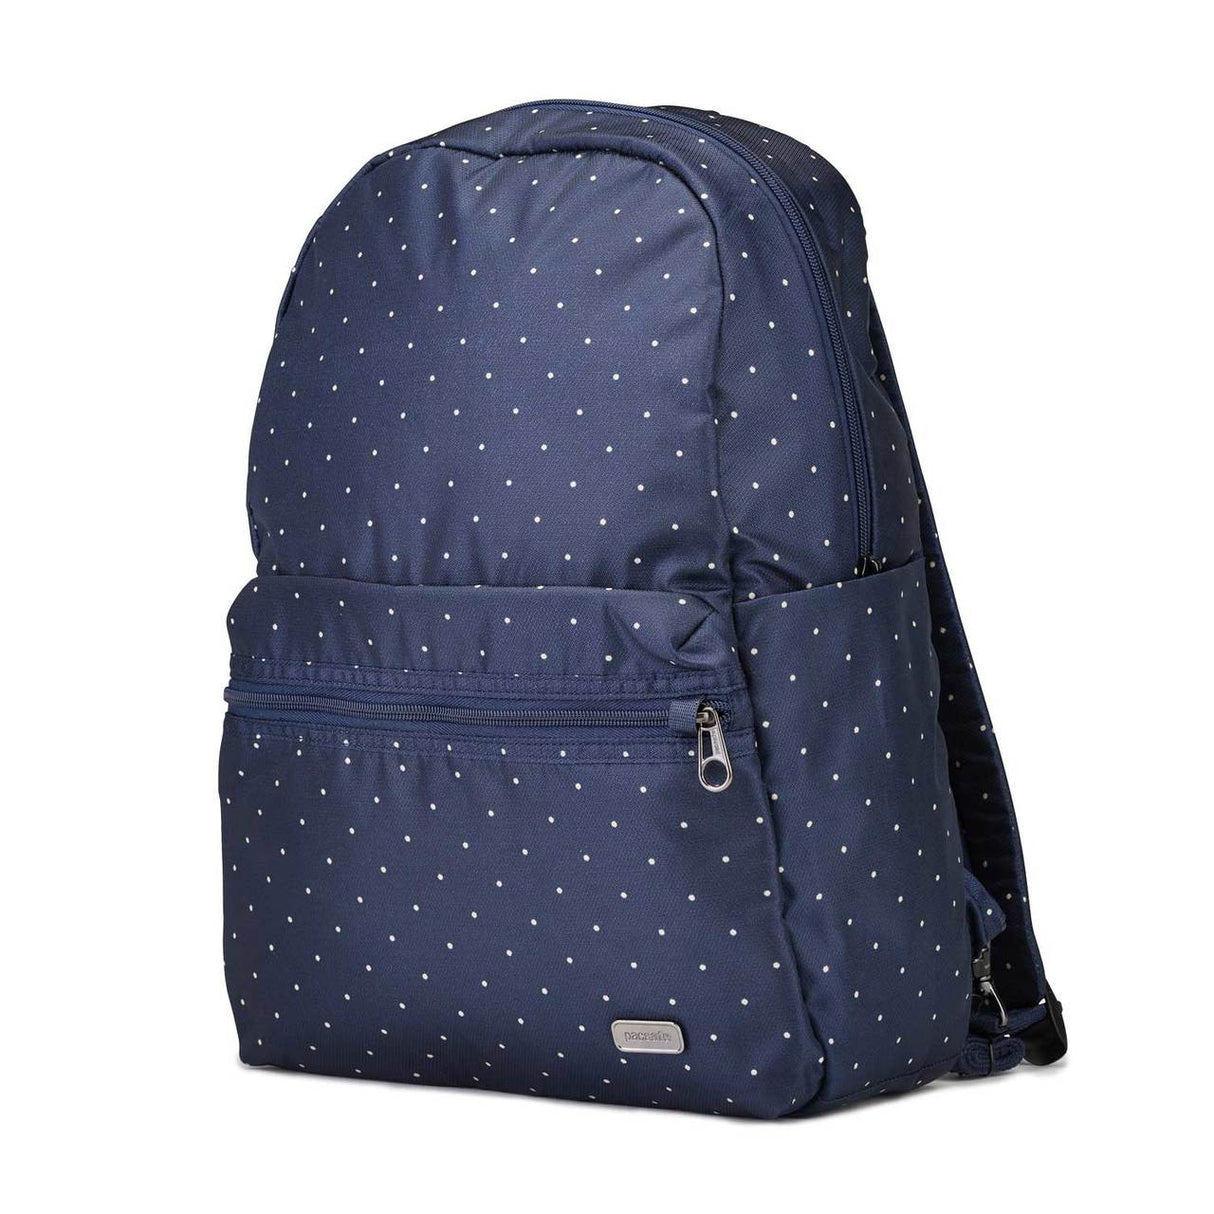 Pacsafe Daysafe backpack